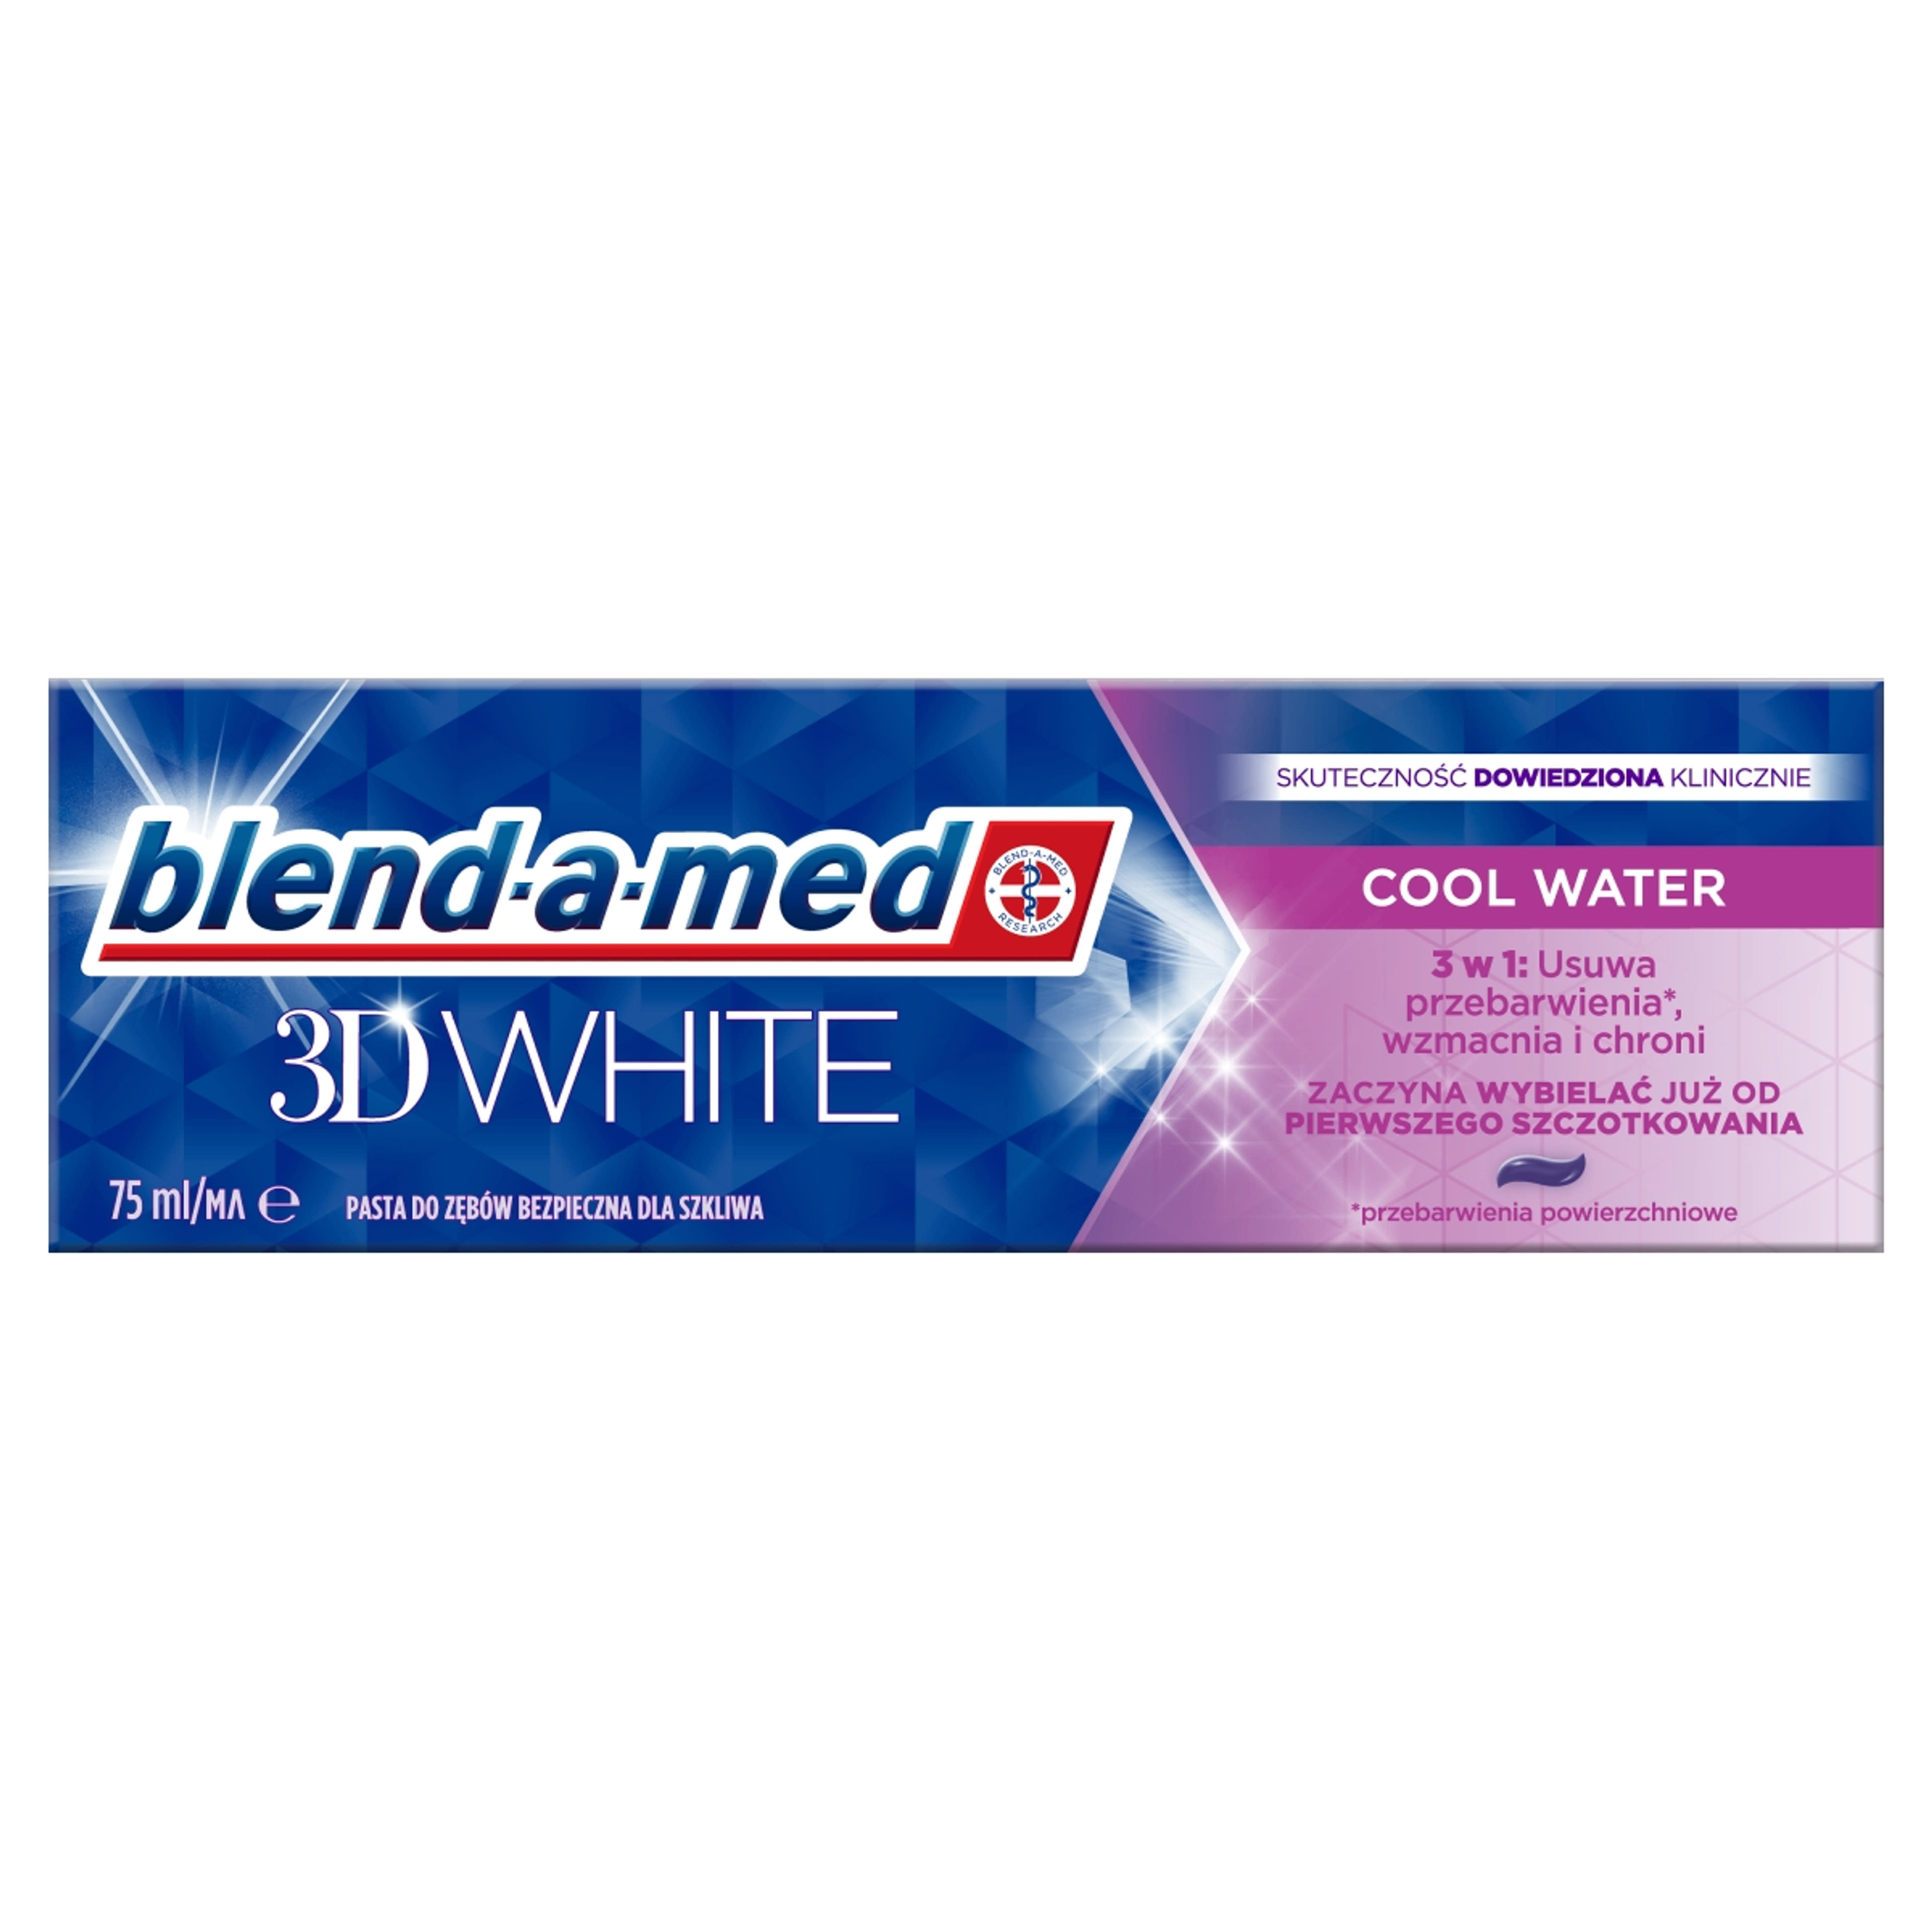 Blend-a-med 3D White Cool Water fogkrém - 75 ml